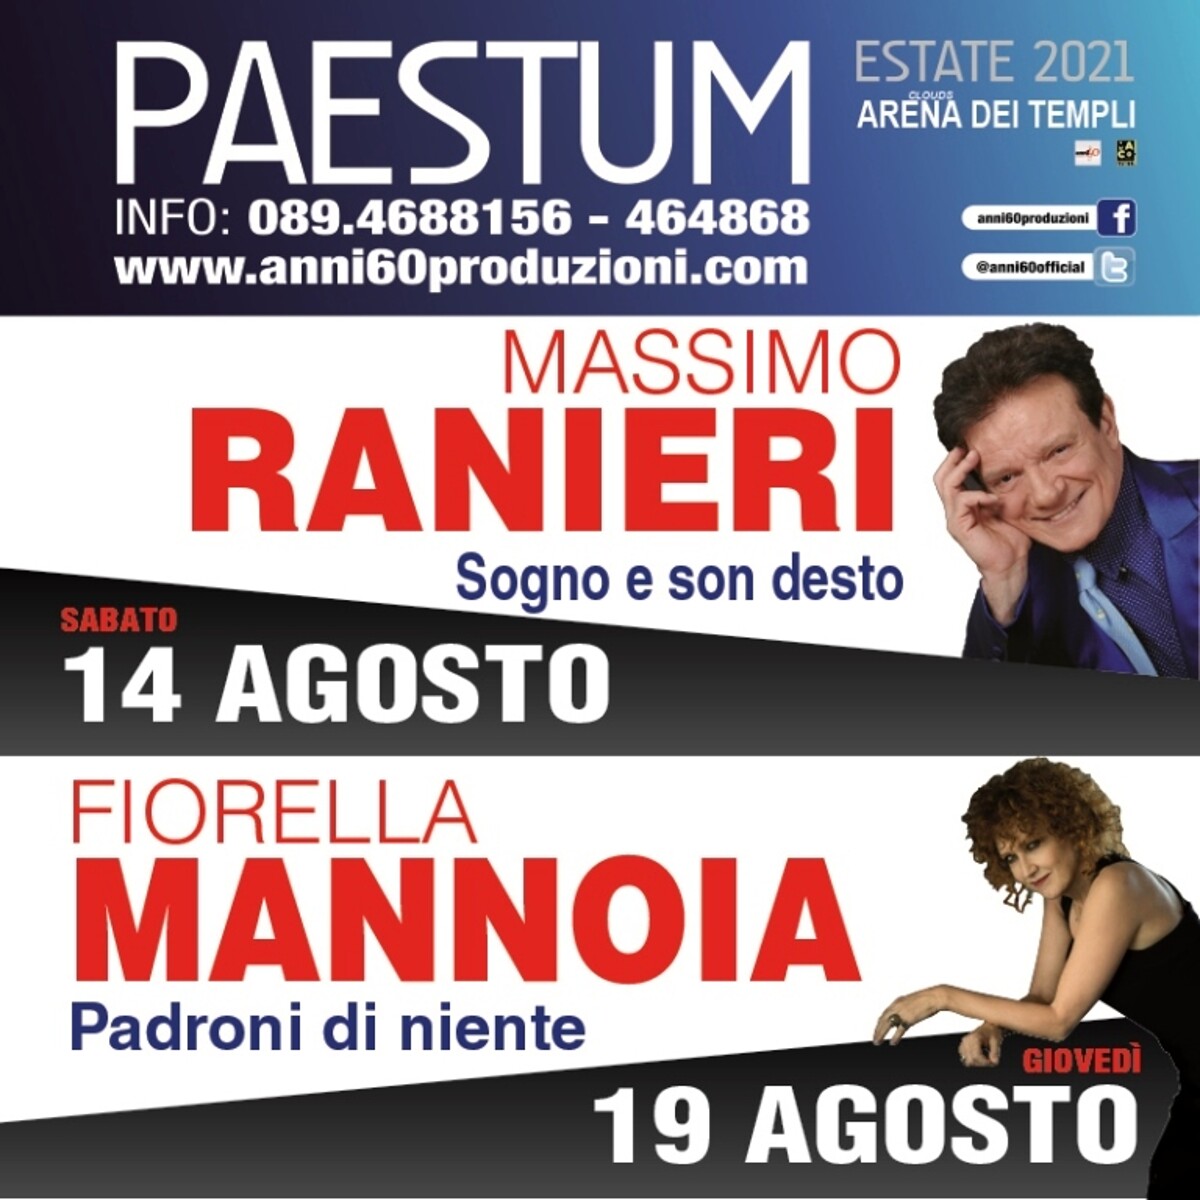 Agosto live a Paestum: arrivano Massimo Ranieri e Fiorella Mannoia